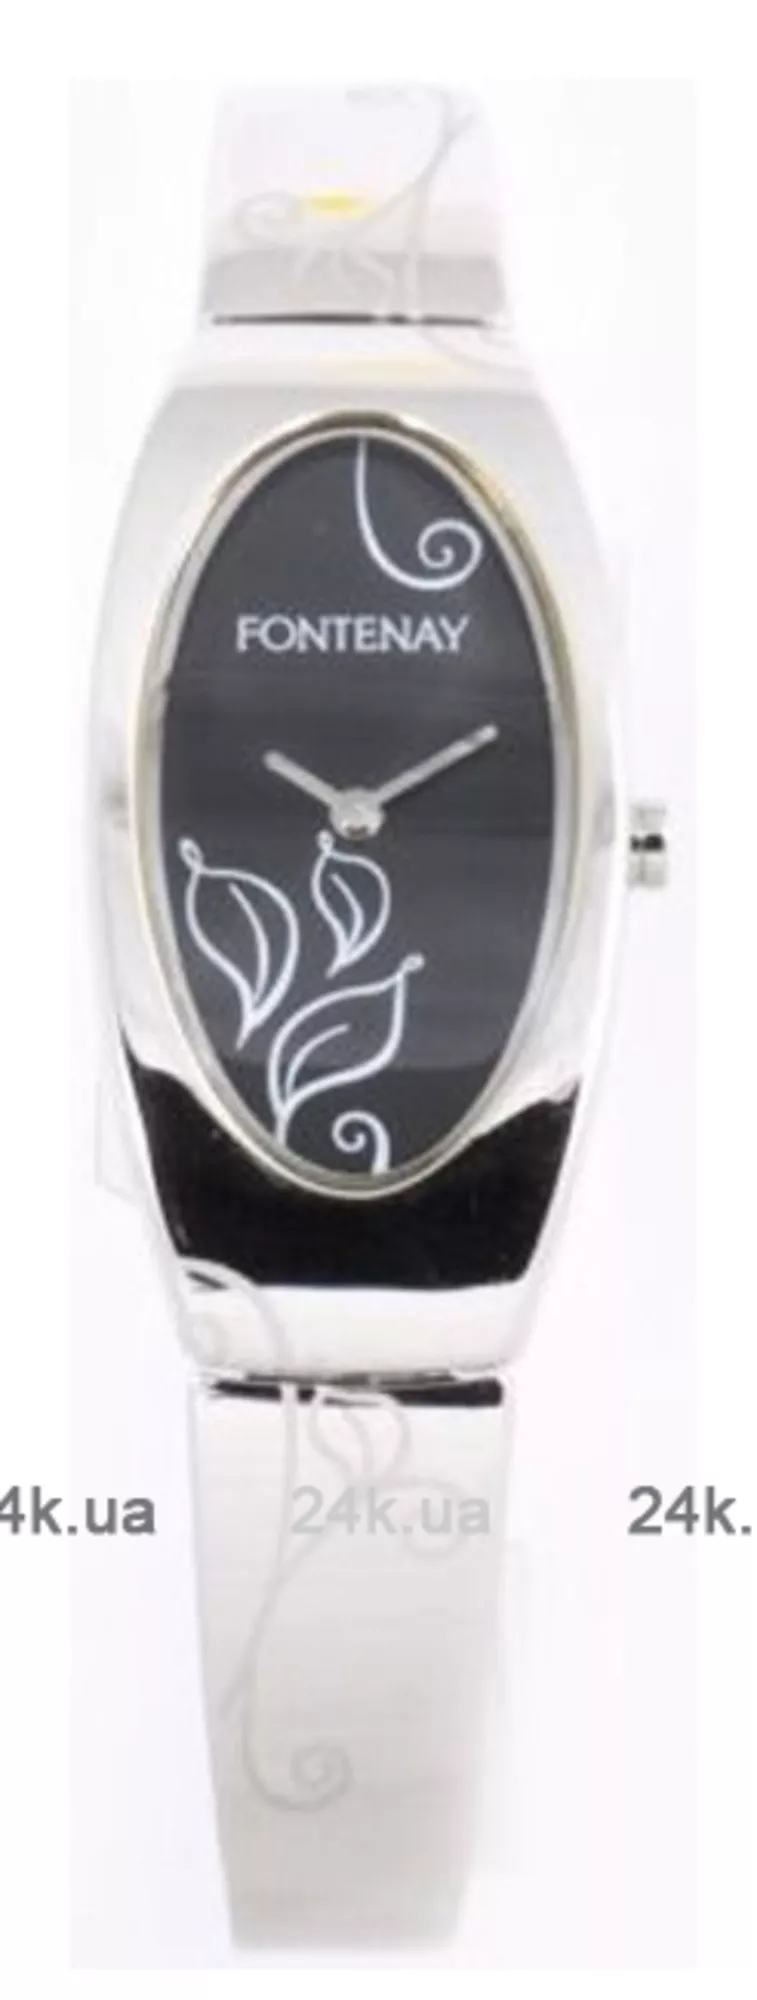 Часы Fontenay UR1225NW